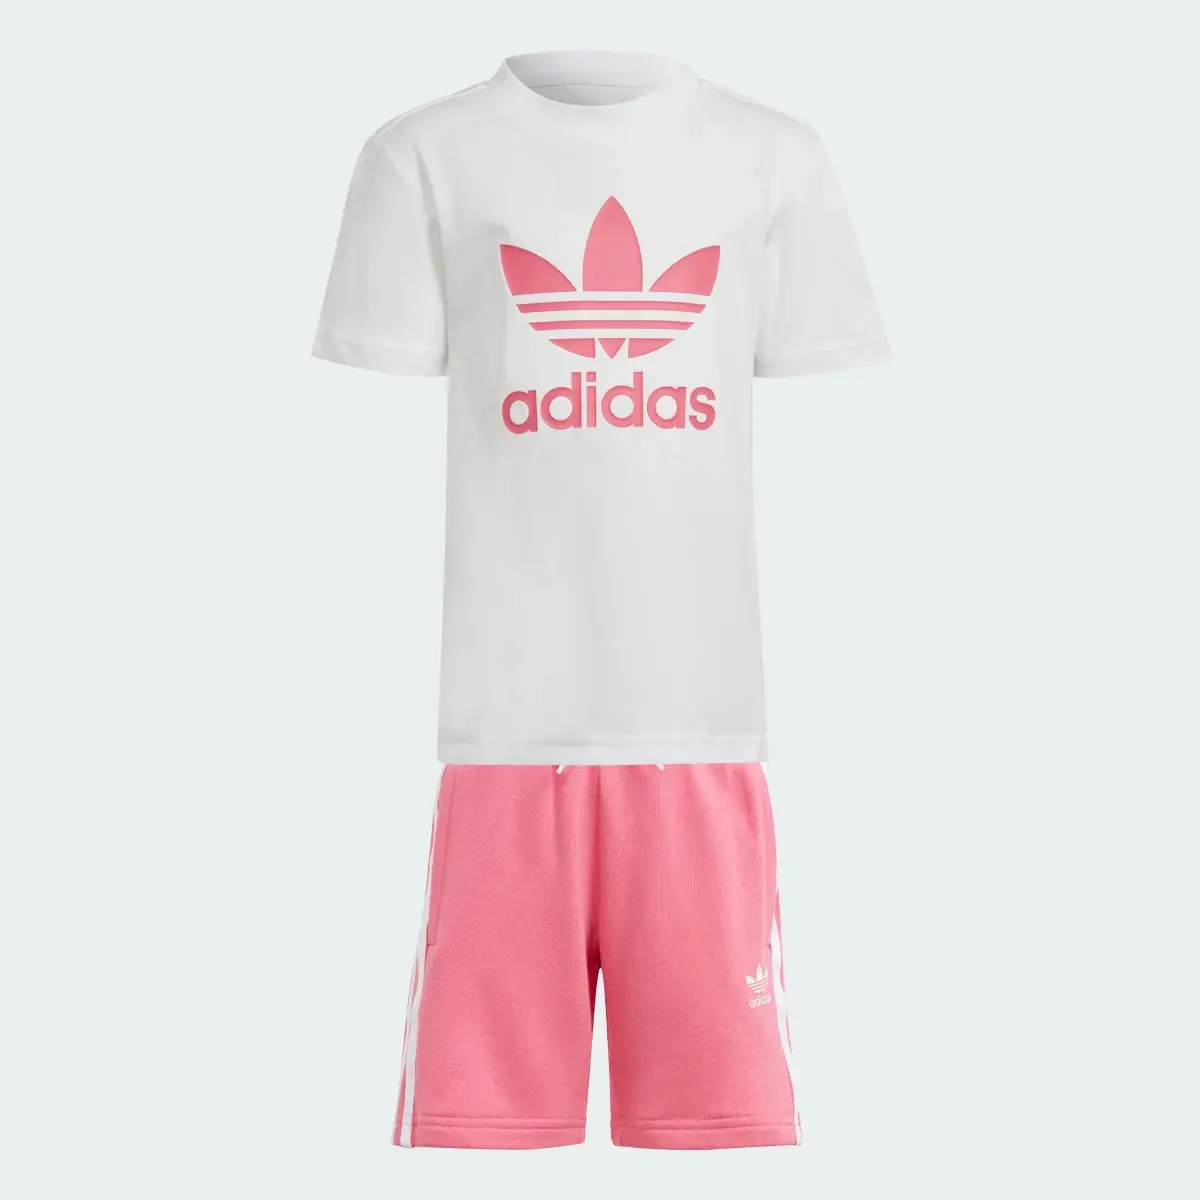 Adidas Adicolor Şort ve Tişört Takımı. 1